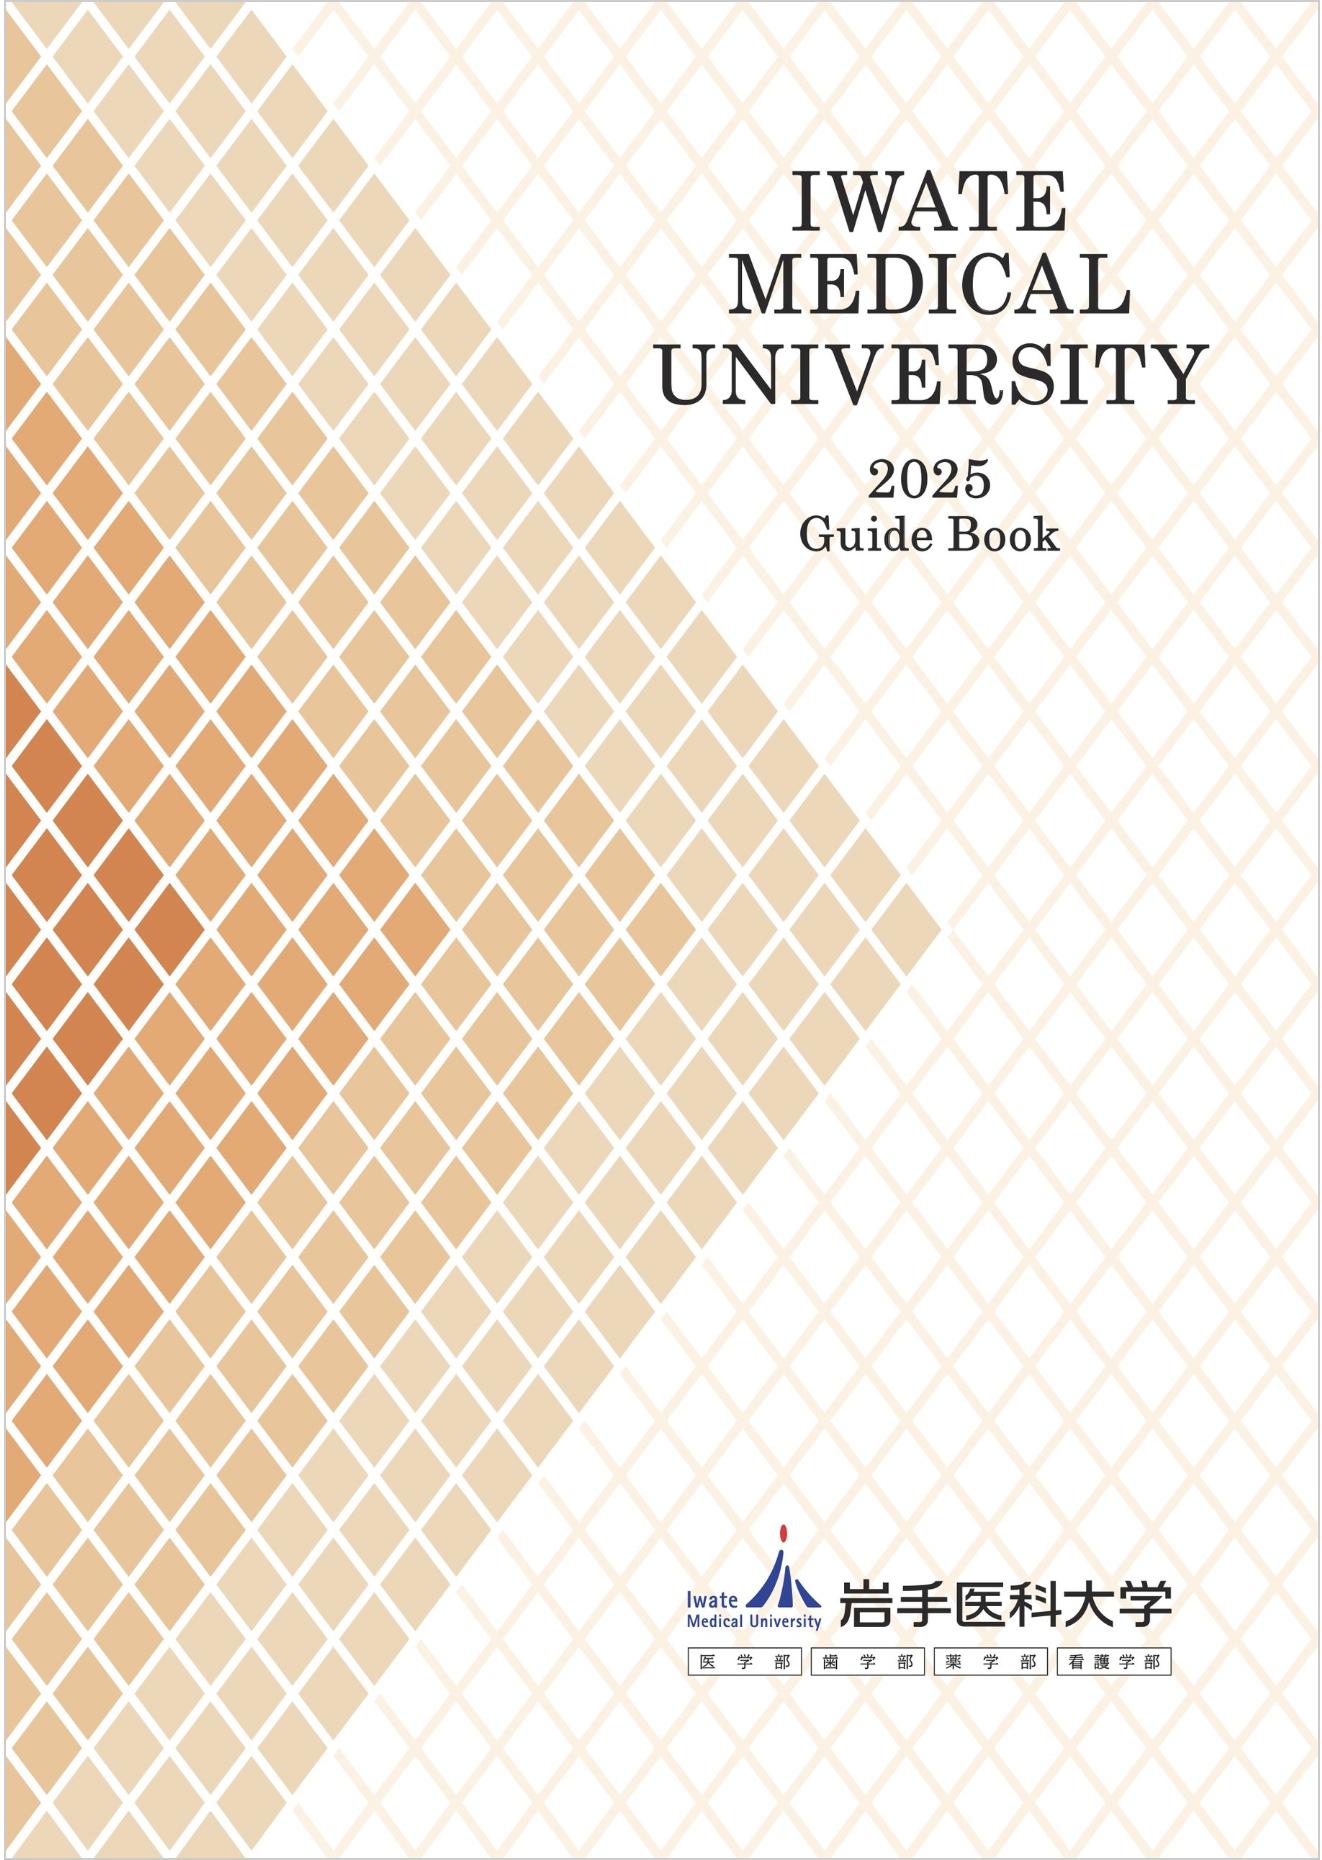 岩手医科大学のパンフレット2025年版：2025年4月入学生対象）の紹介と資料請求案内